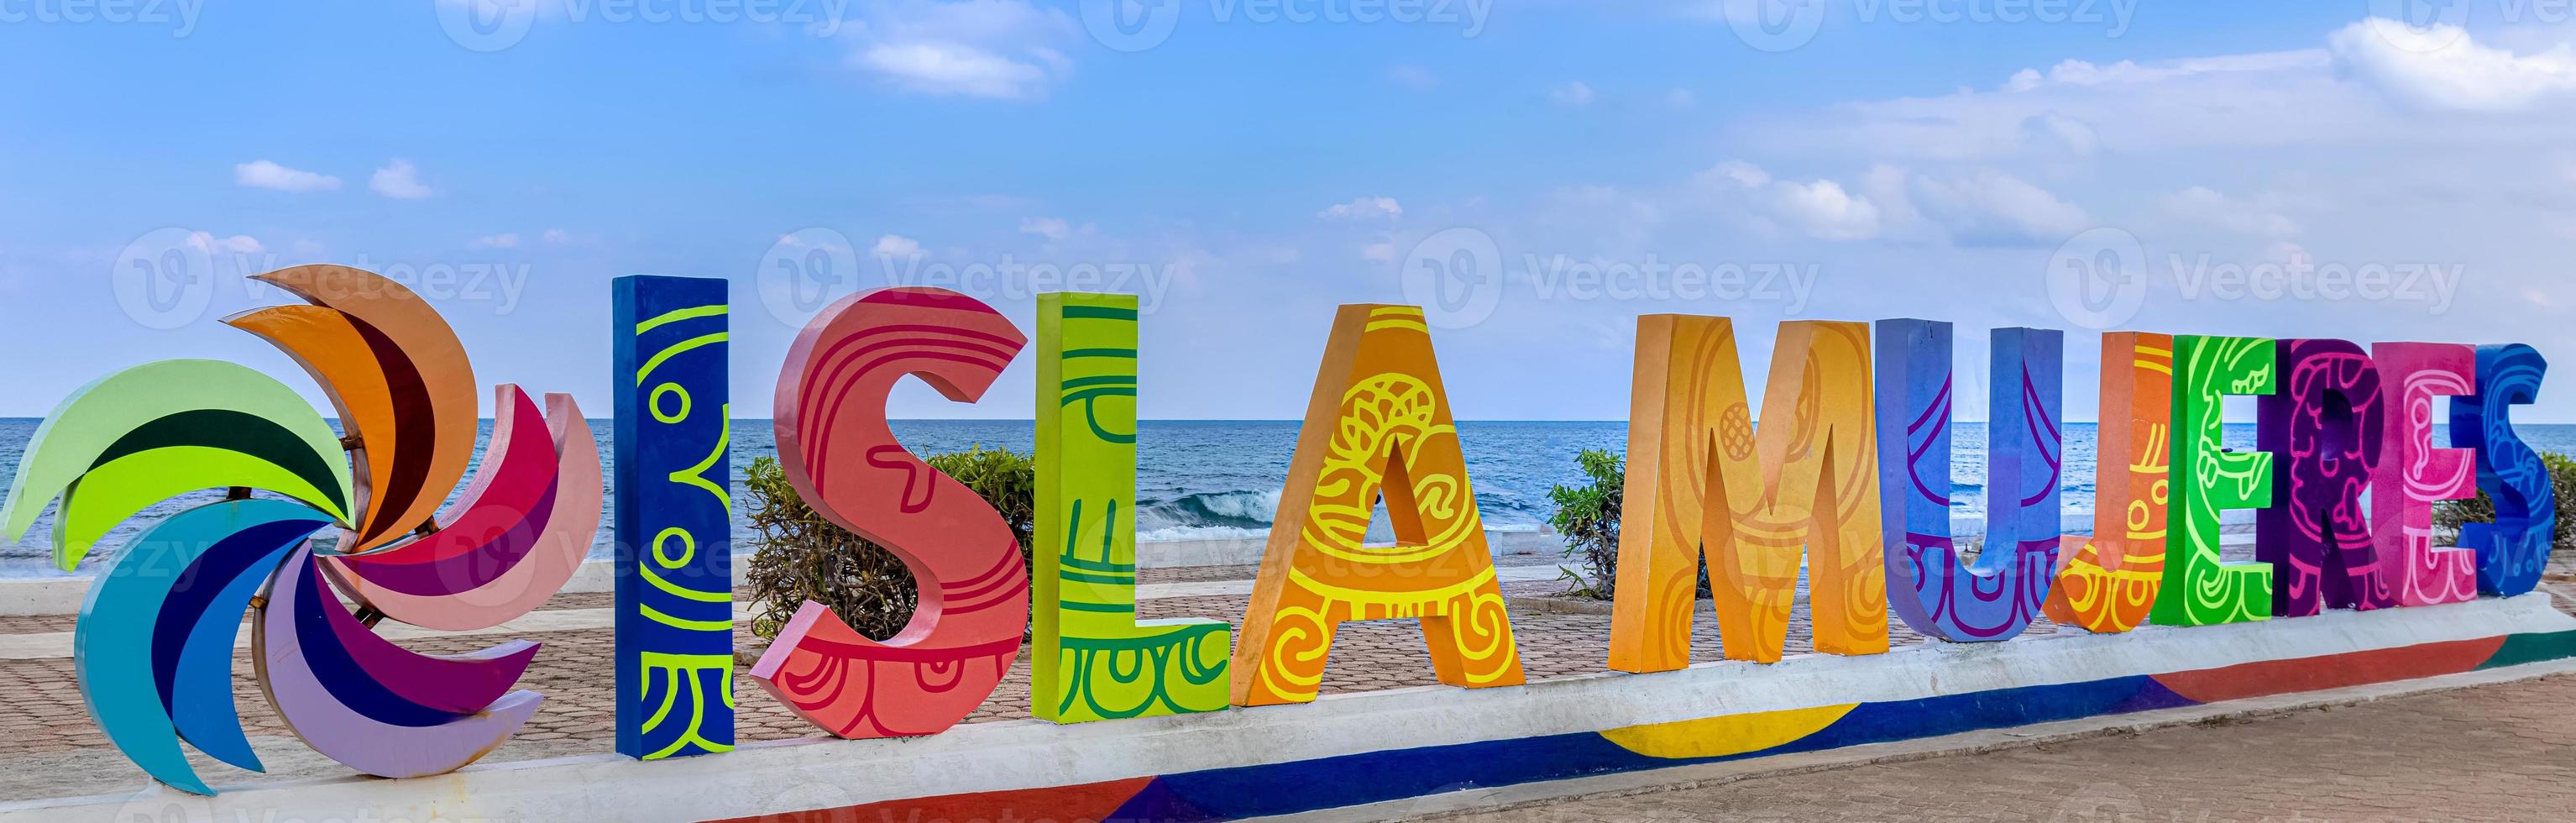 lettres colorées et plages pittoresques de l'île isla mujeres située de l'autre côté du golfe du mexique, à quelques minutes en ferry de cancun photo